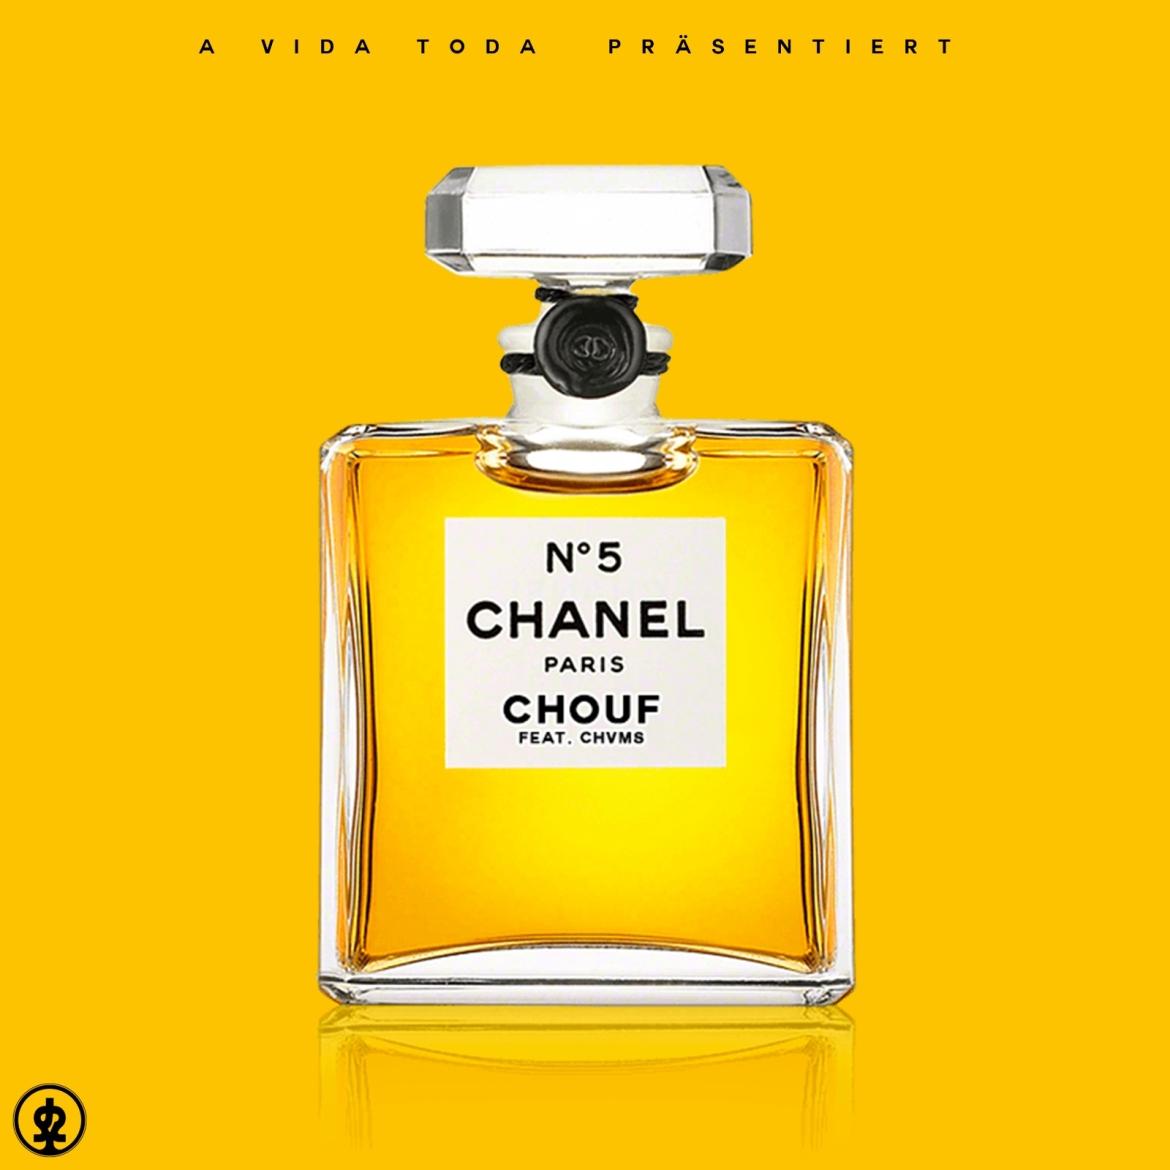 CHOUF feat. CHVMS - Chanel Nº 5